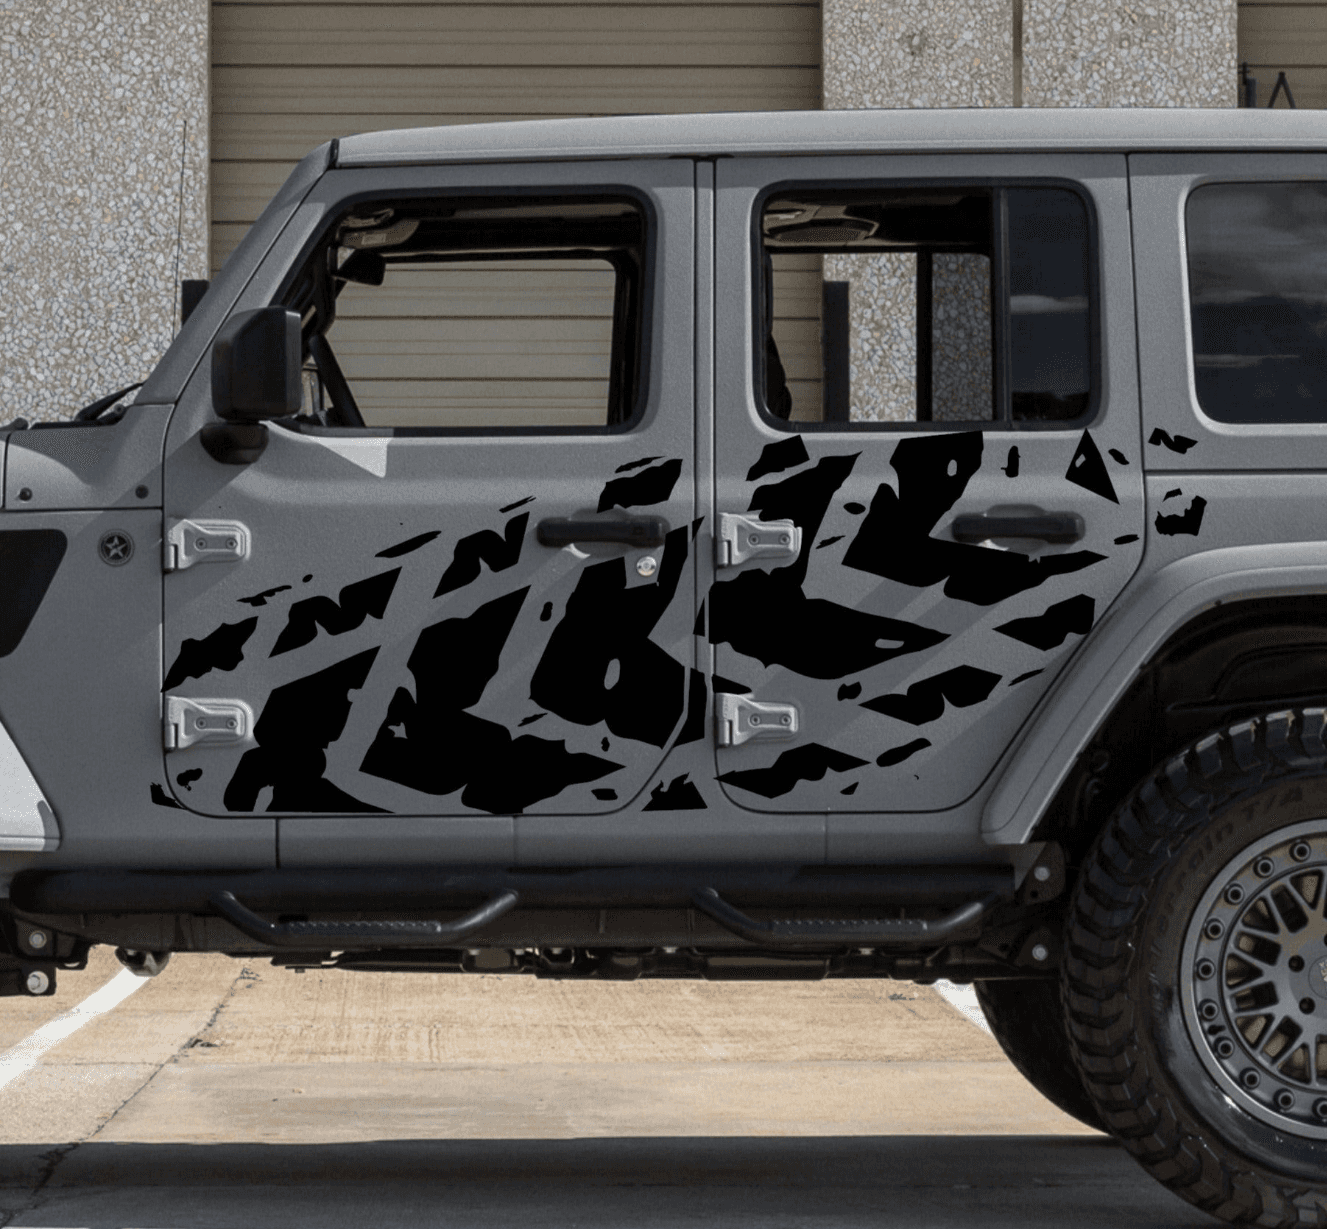 Set of Tire Tracks Decals For Jeep Wrangler JL 4-Door